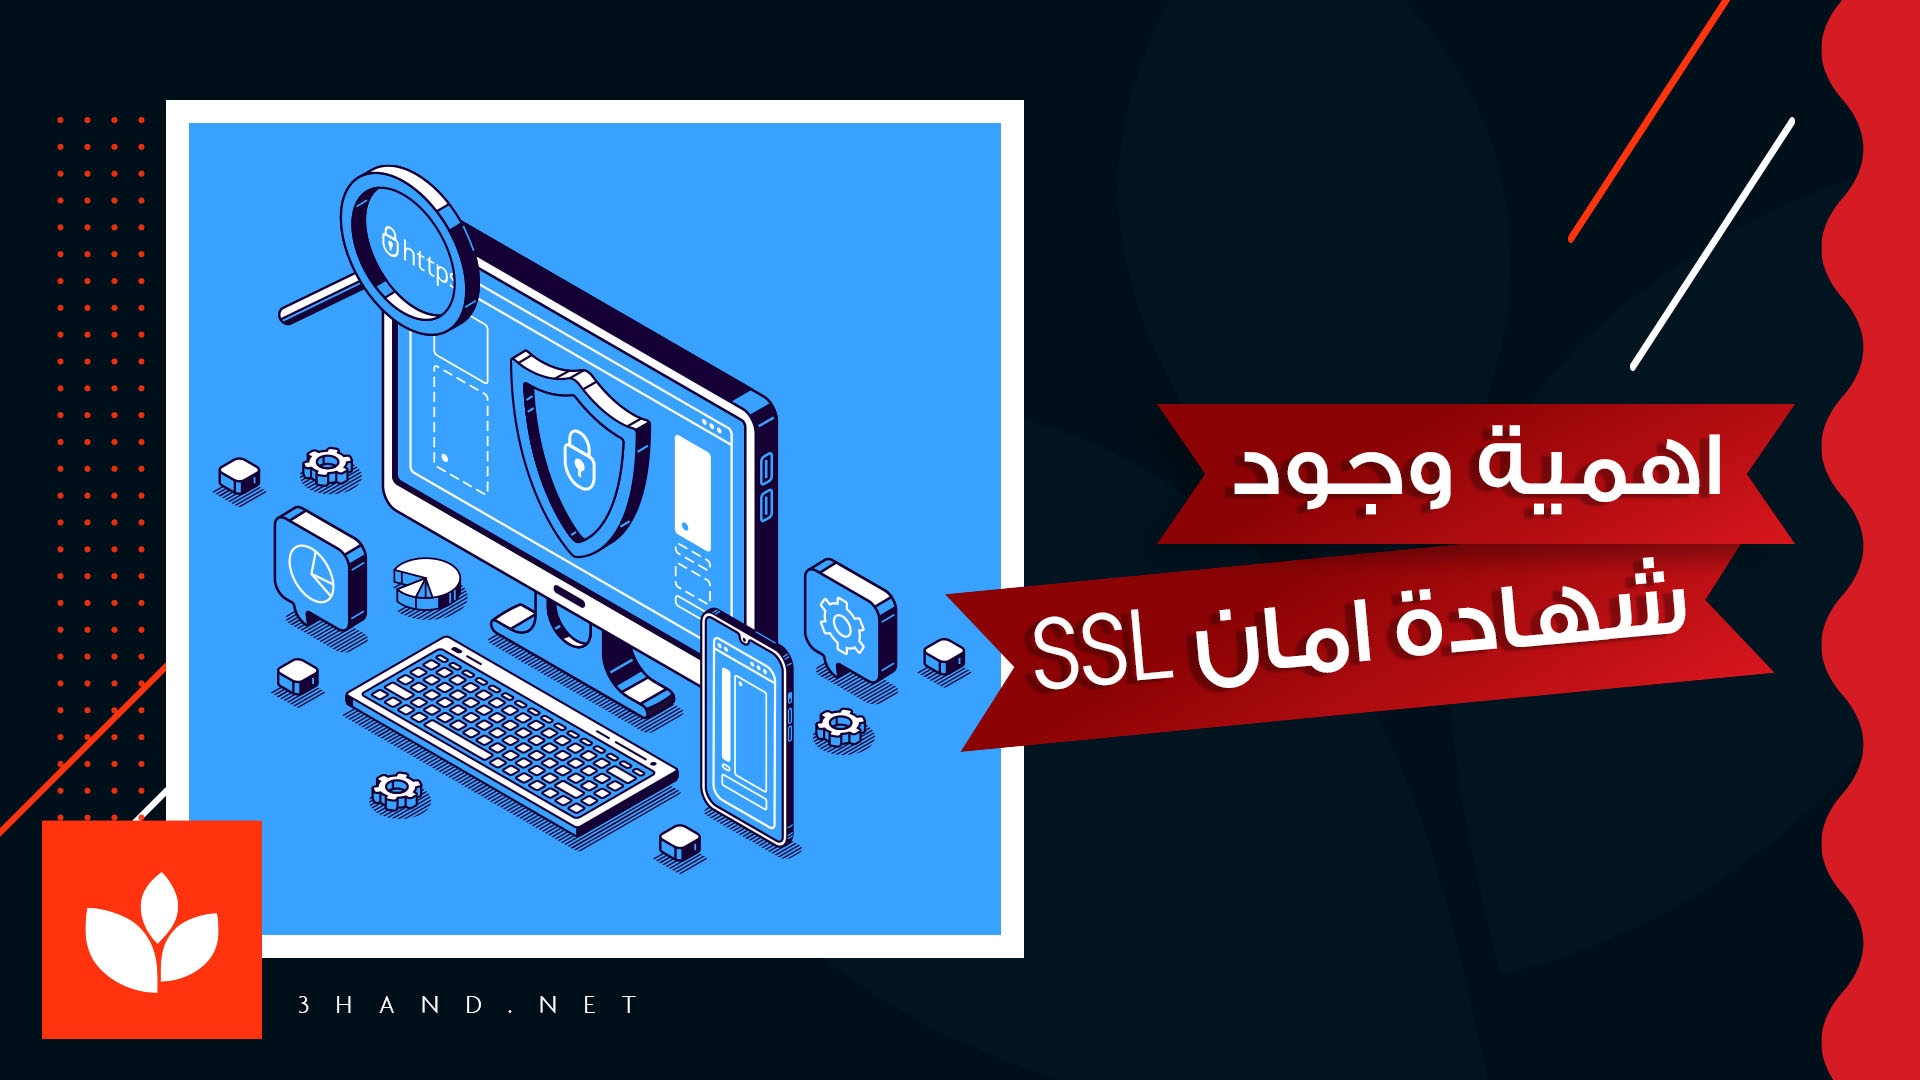 اهمية وجود شهادة امان SSL